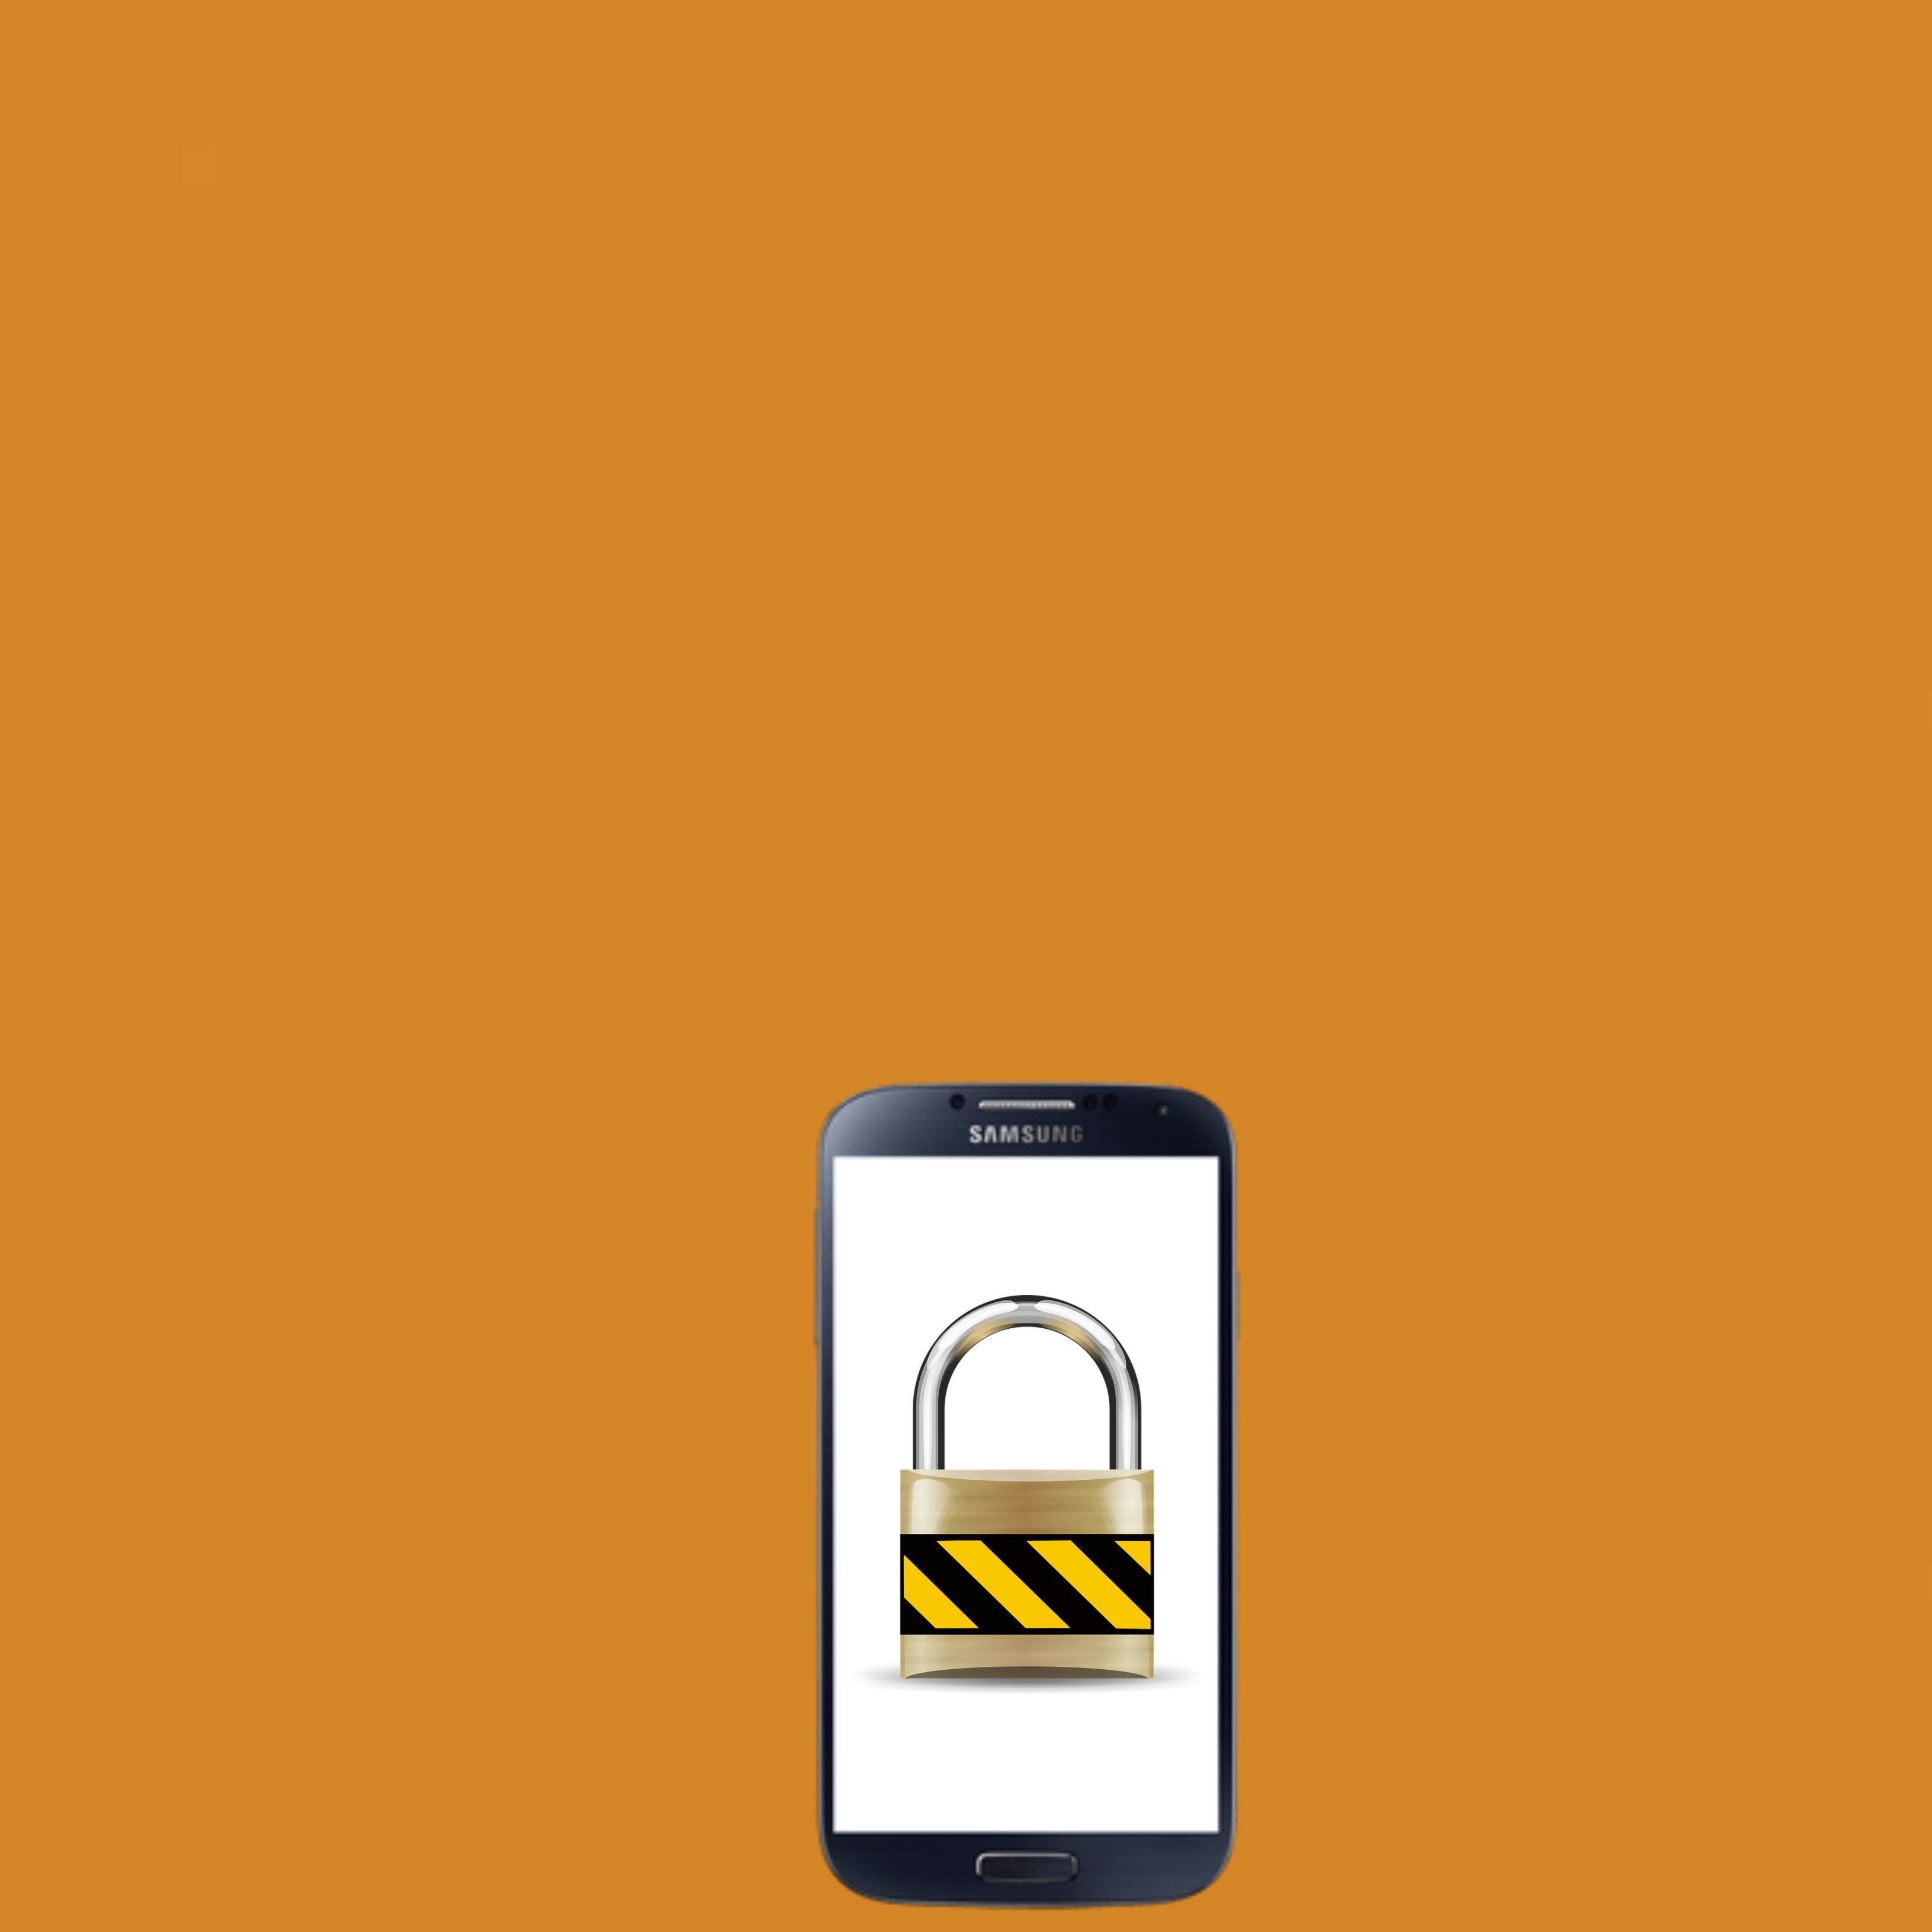 Un atac per SMS a mòbils Android exigeix pagaments de rescat als usuaris